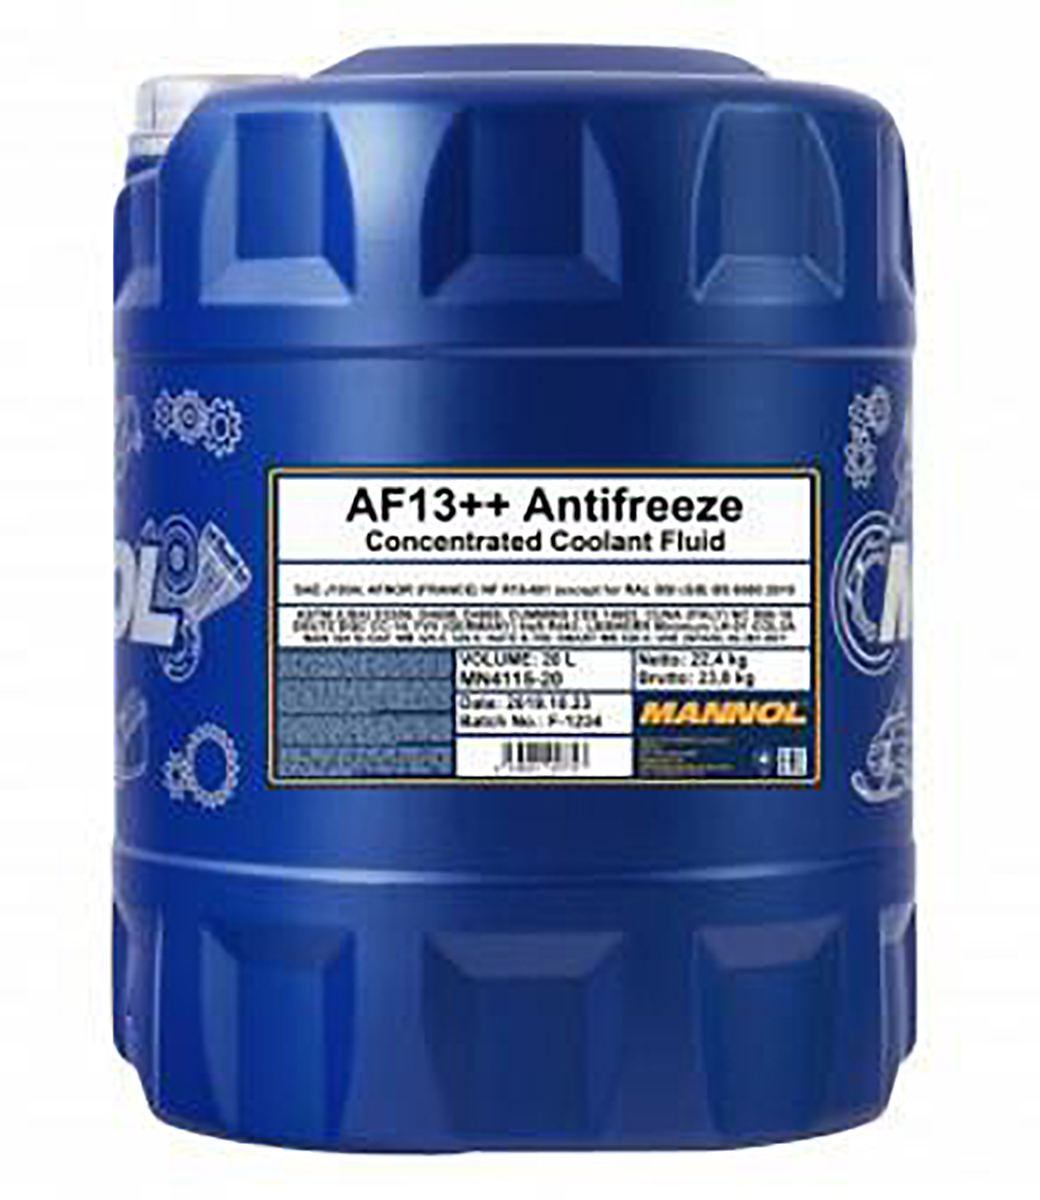 Antifreeze AF13++